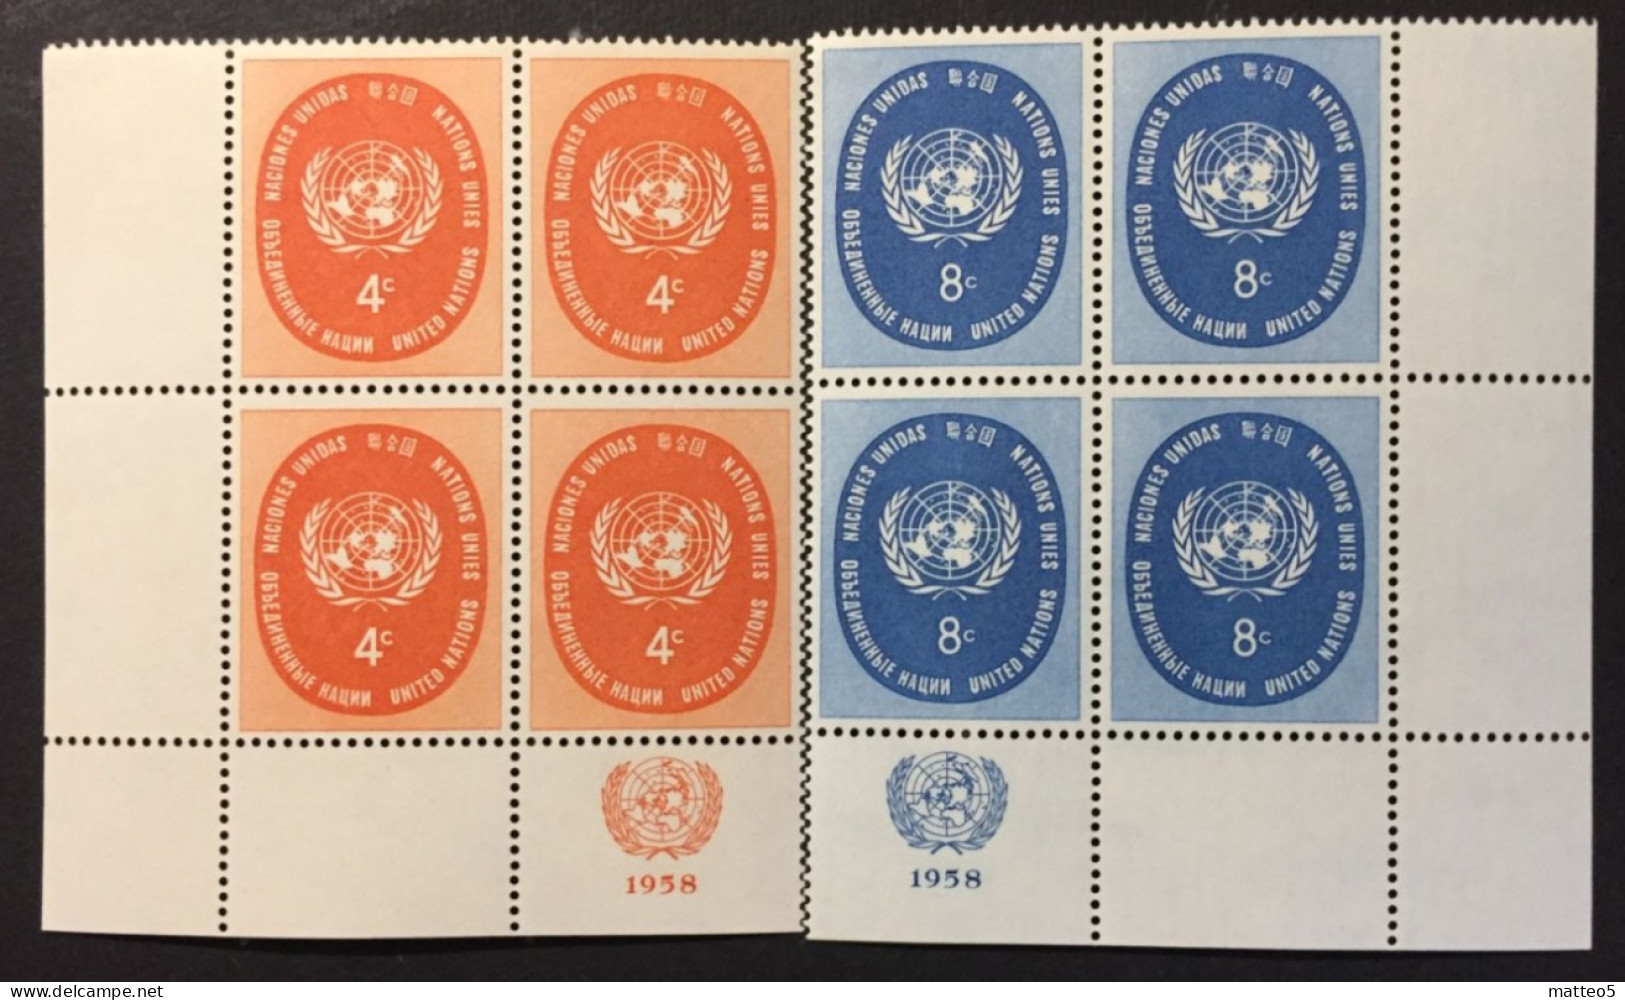 1958 - United Nations UNO UN ONU - UN Symbol - 2 X4 Stamps Unused - Unused Stamps